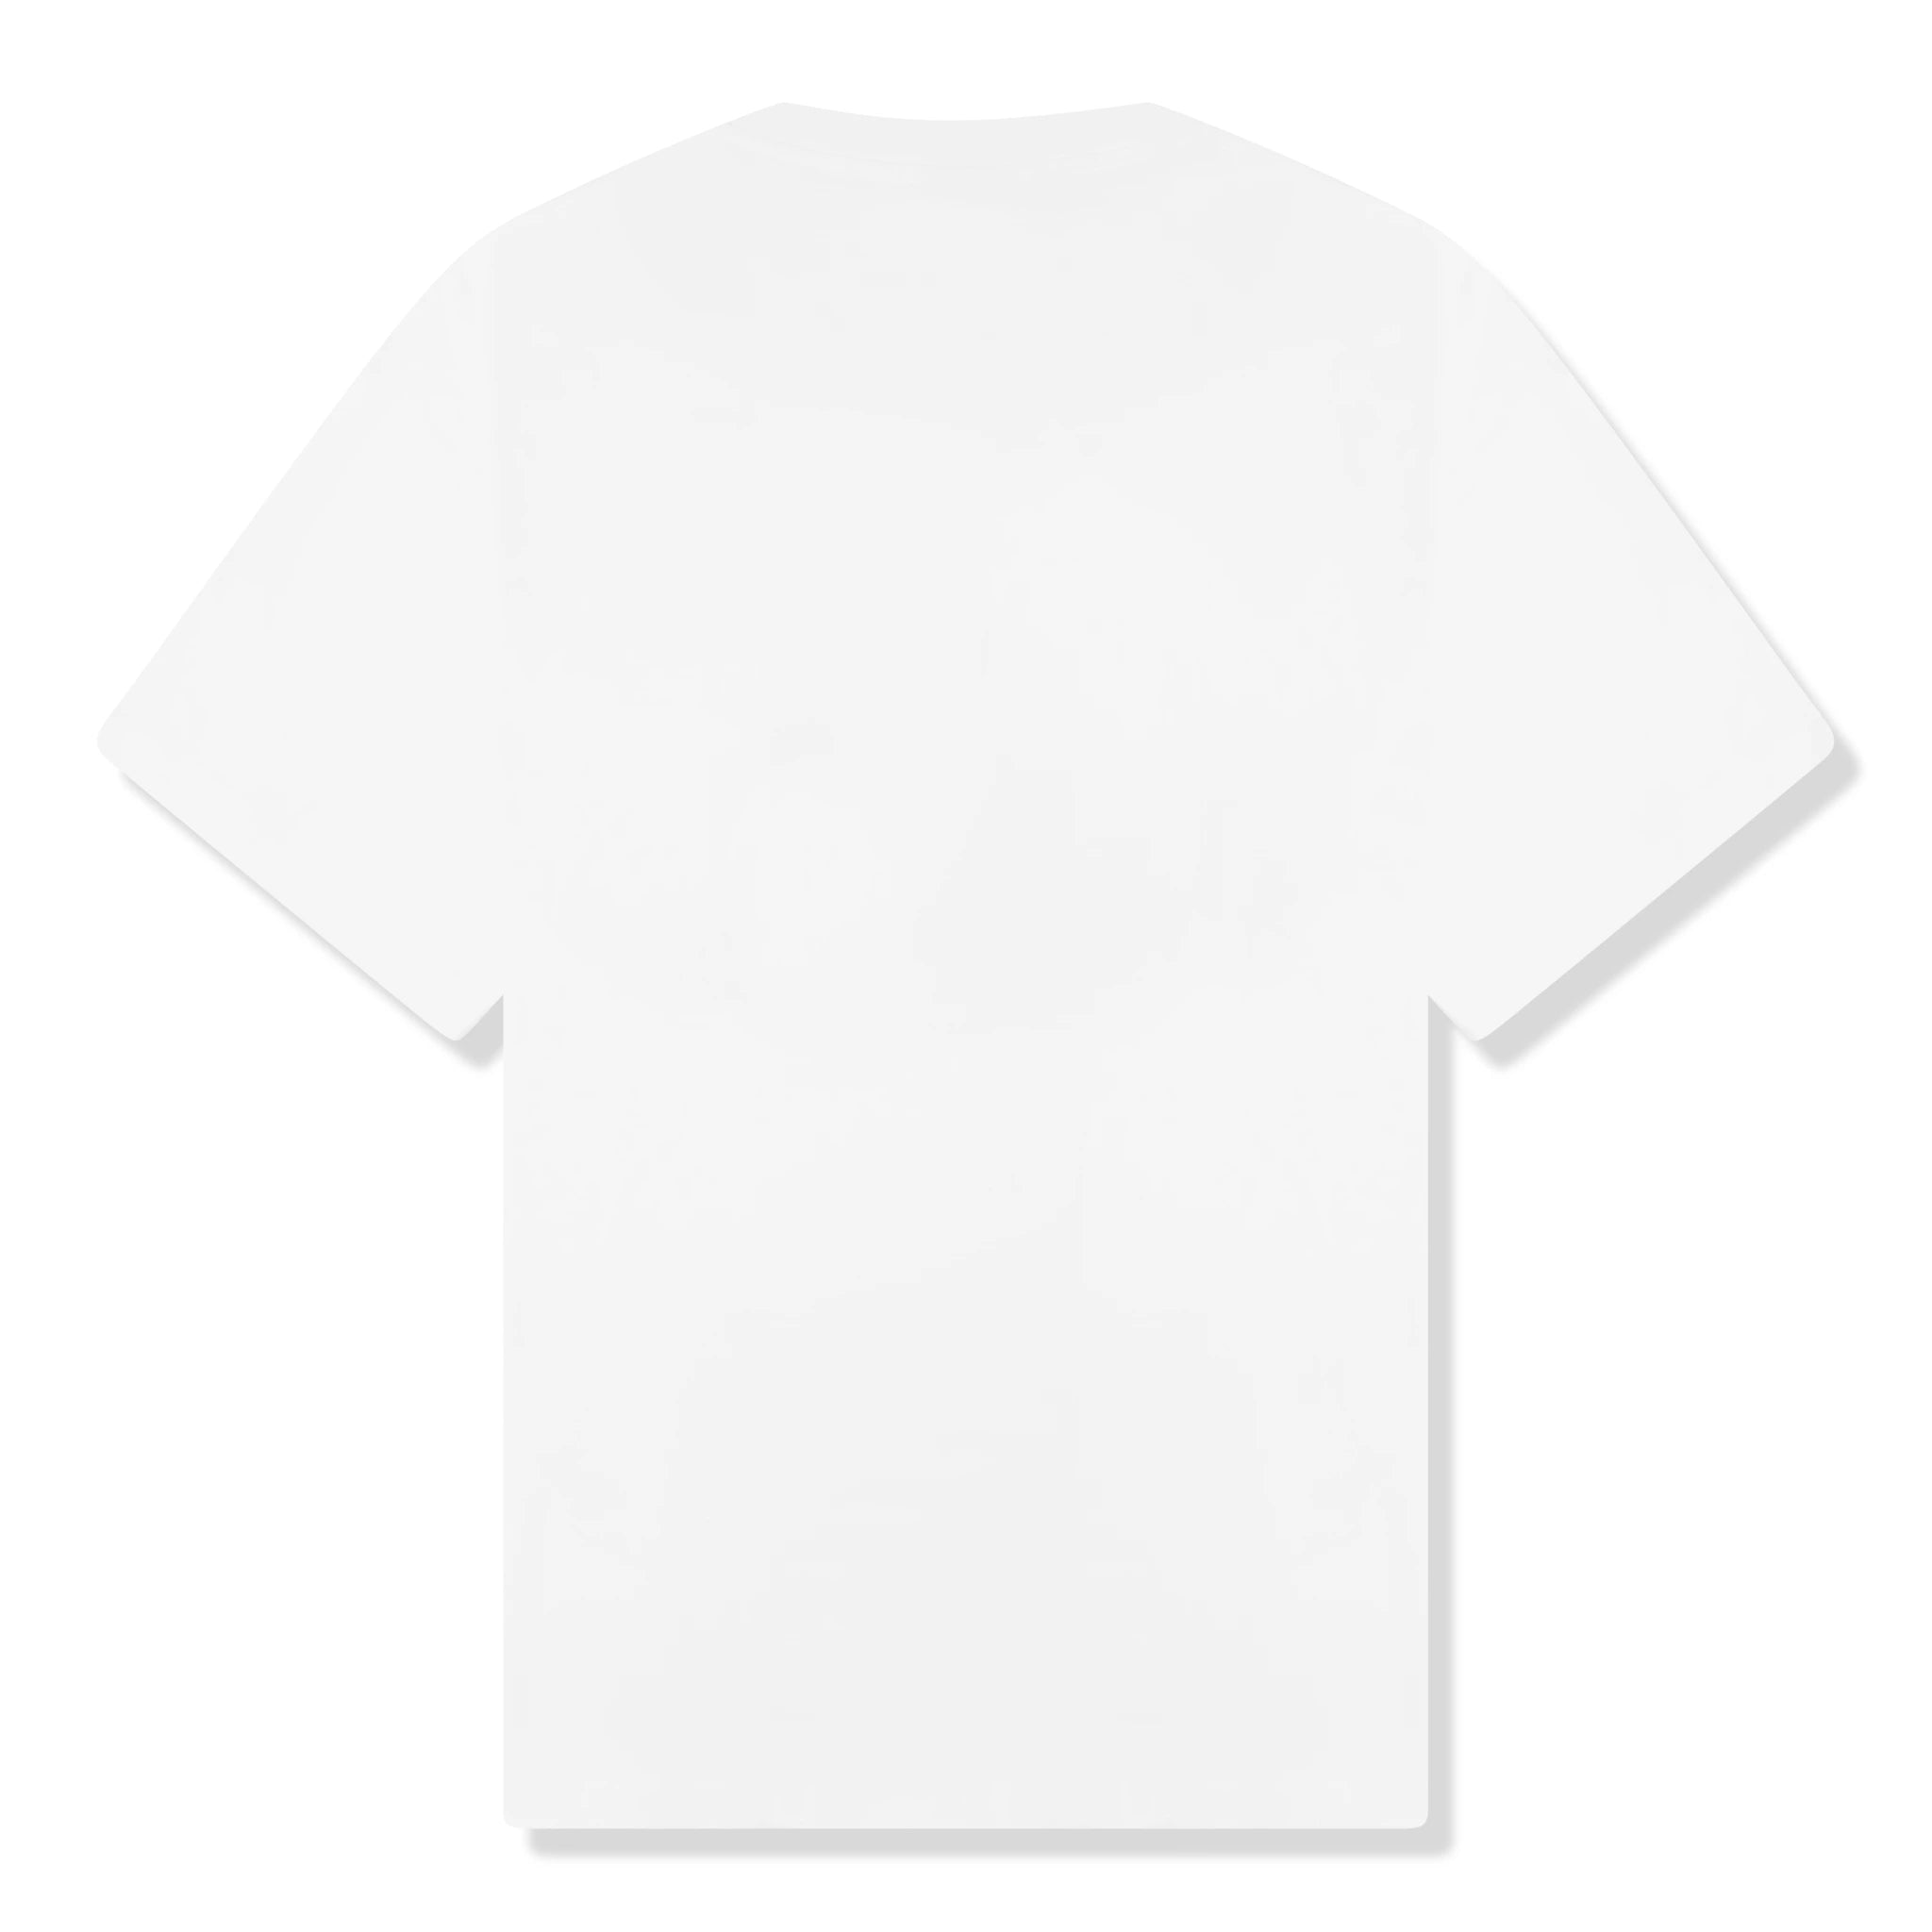 Back view of Corteiz Allstarz White T Shirt